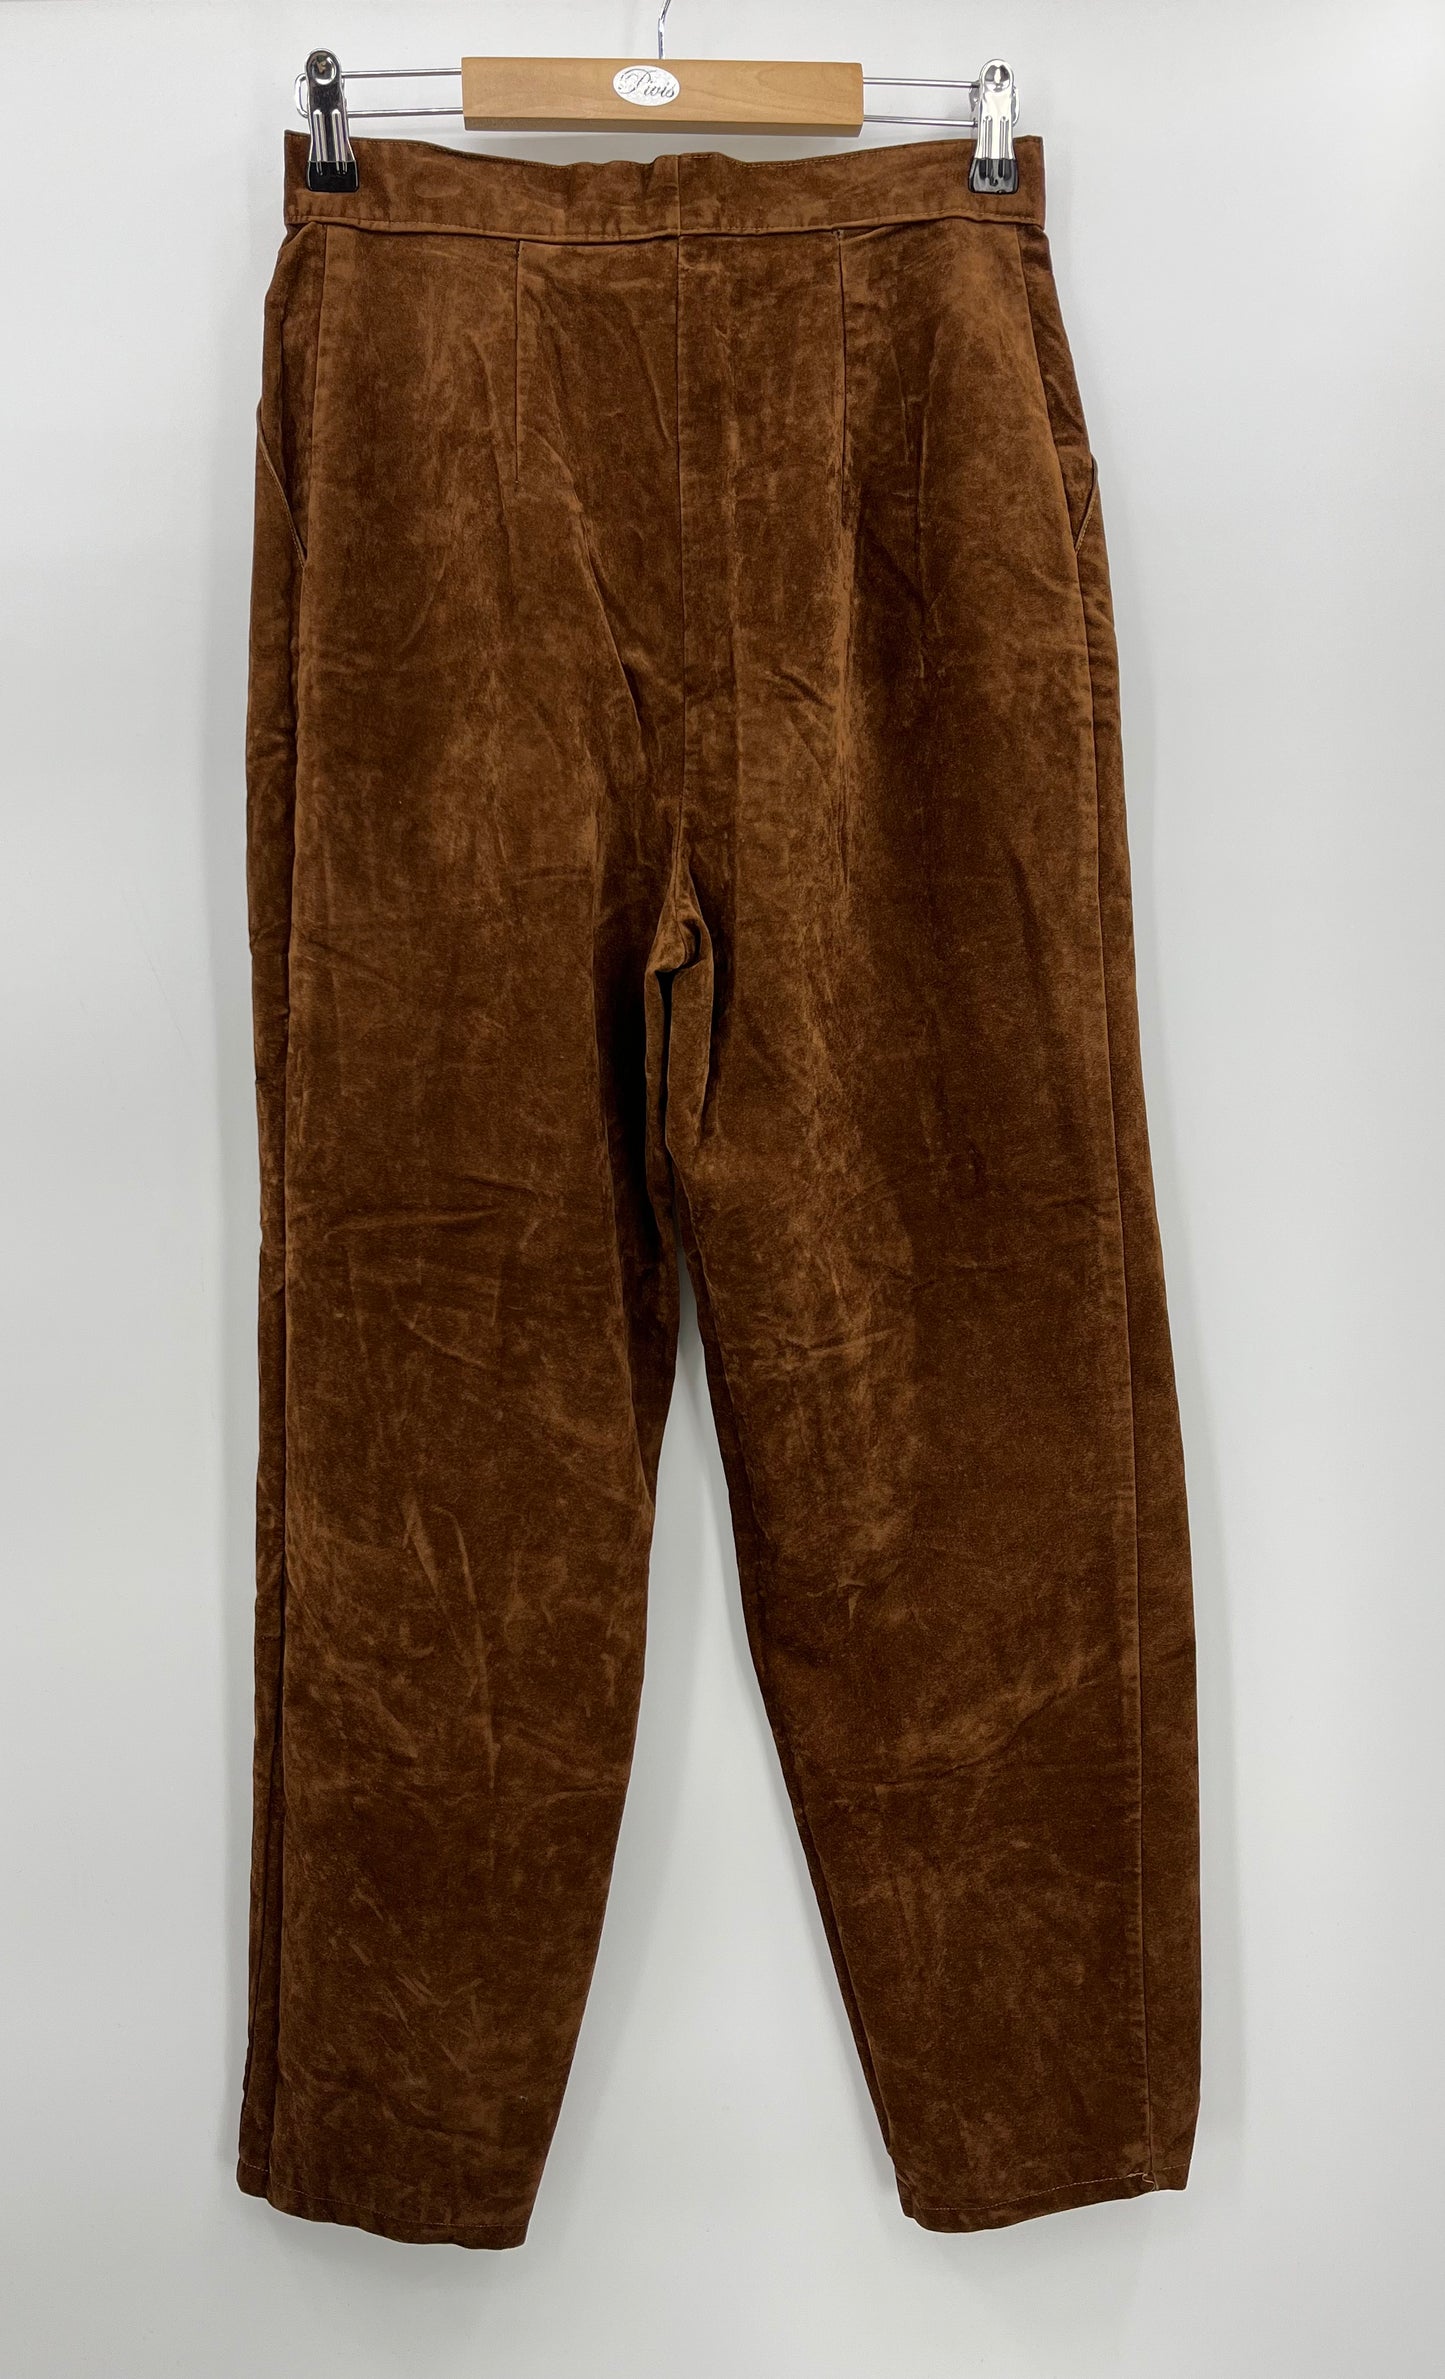 Ruskeat samettihousut, 70-80-luku, vyöt.ymp. 70cm, kokoarvio 36